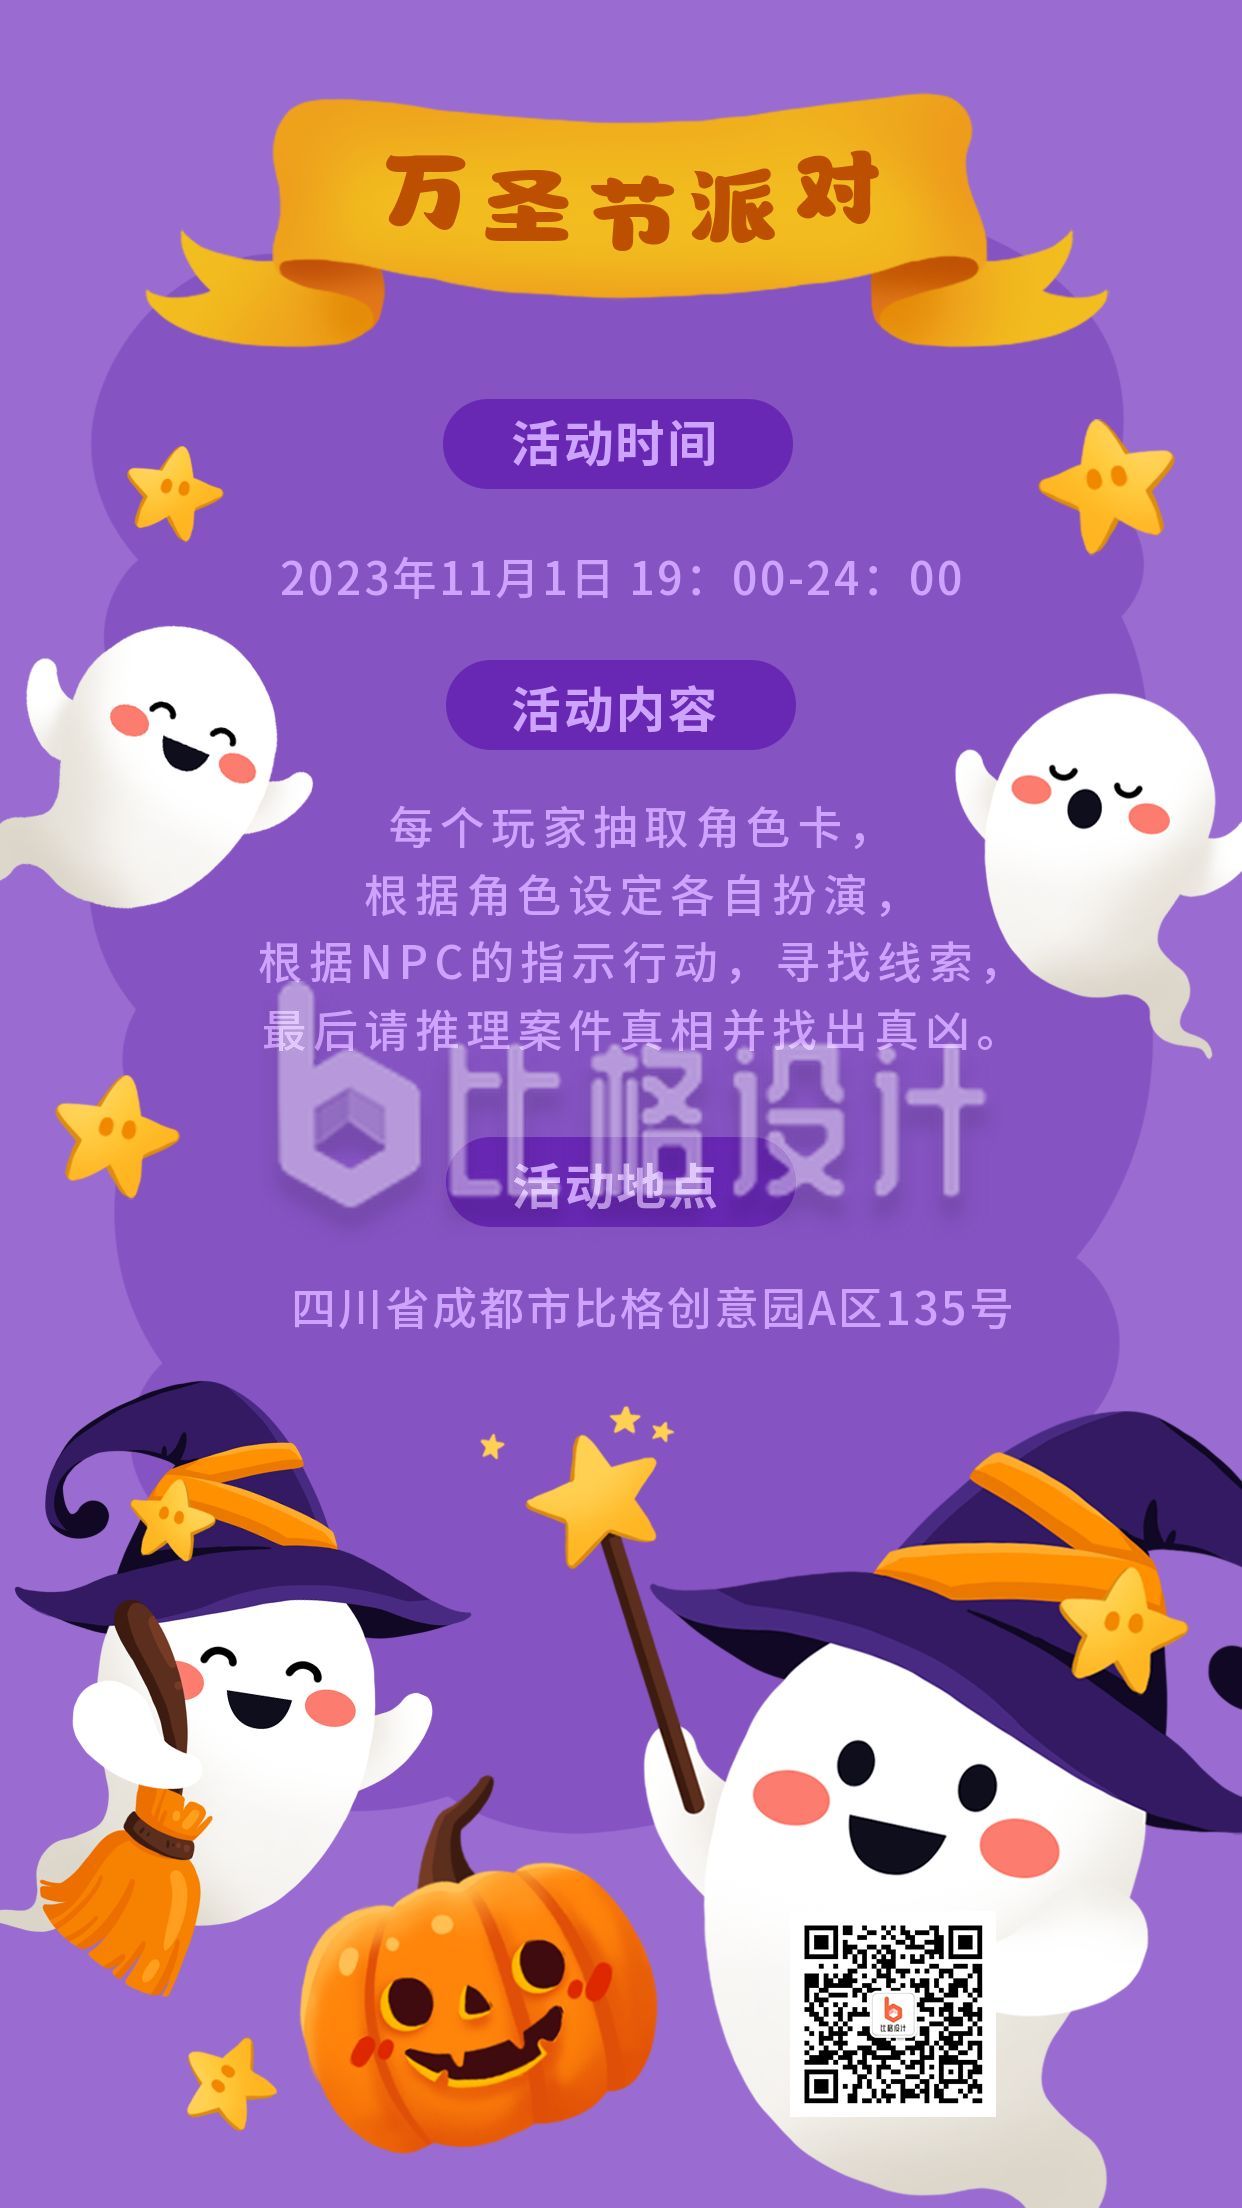 紫色背景万圣节派对活动通知卡通可爱南瓜幽灵鬼魂宣传海报